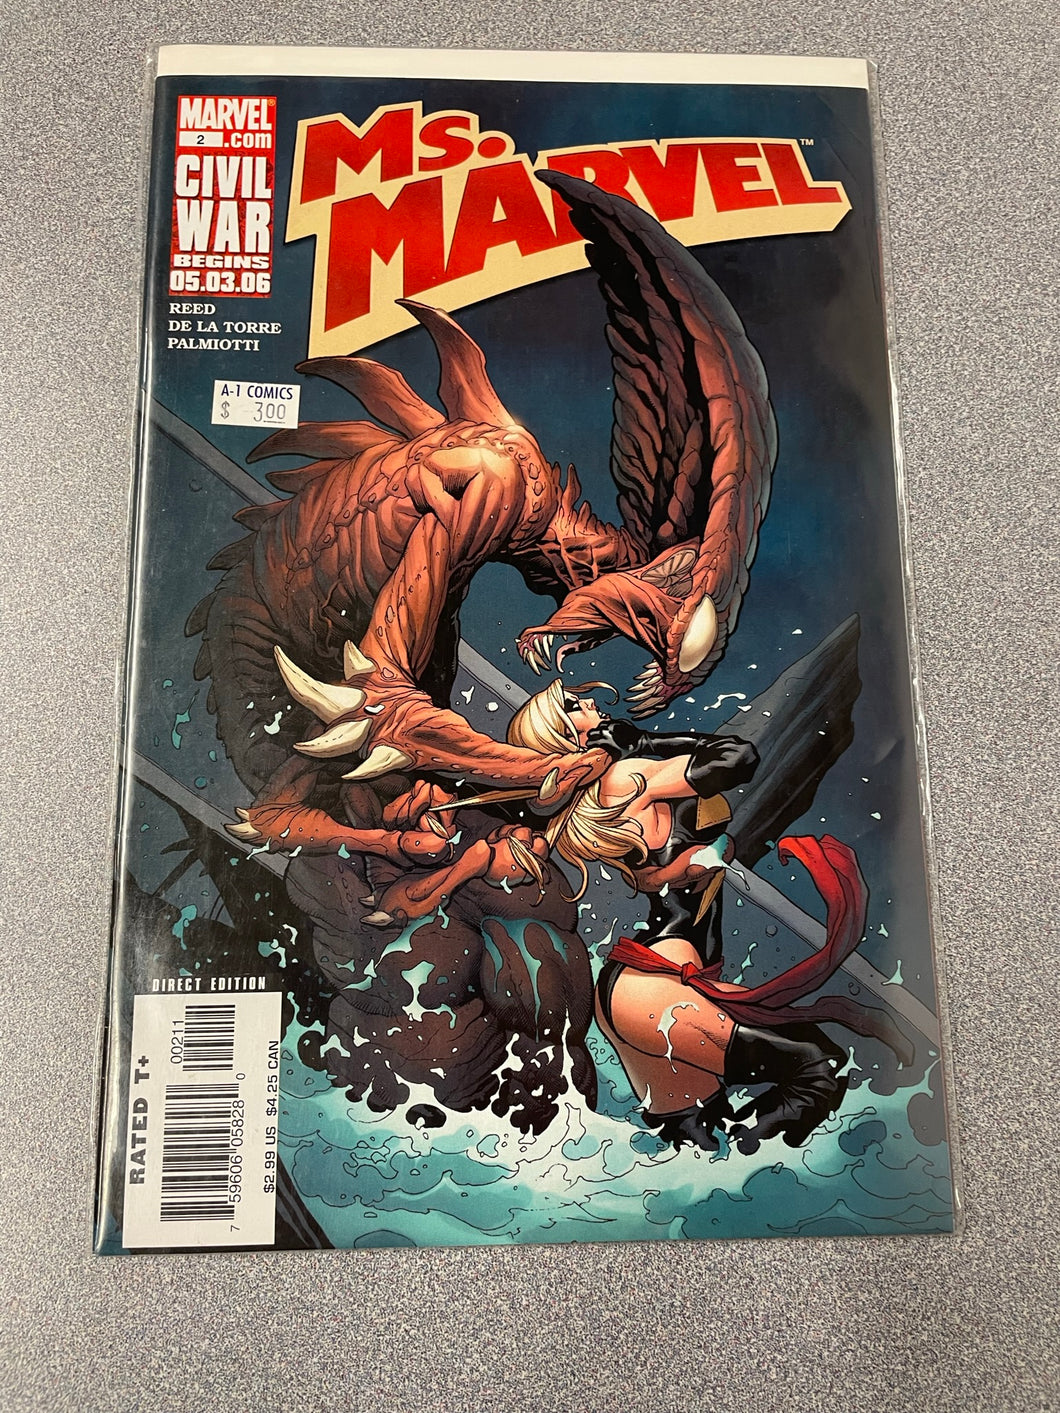 Ms. Marvel # 2: Civil War Begins 05.03.06:  Reed, Brian [2006] GN 1/23